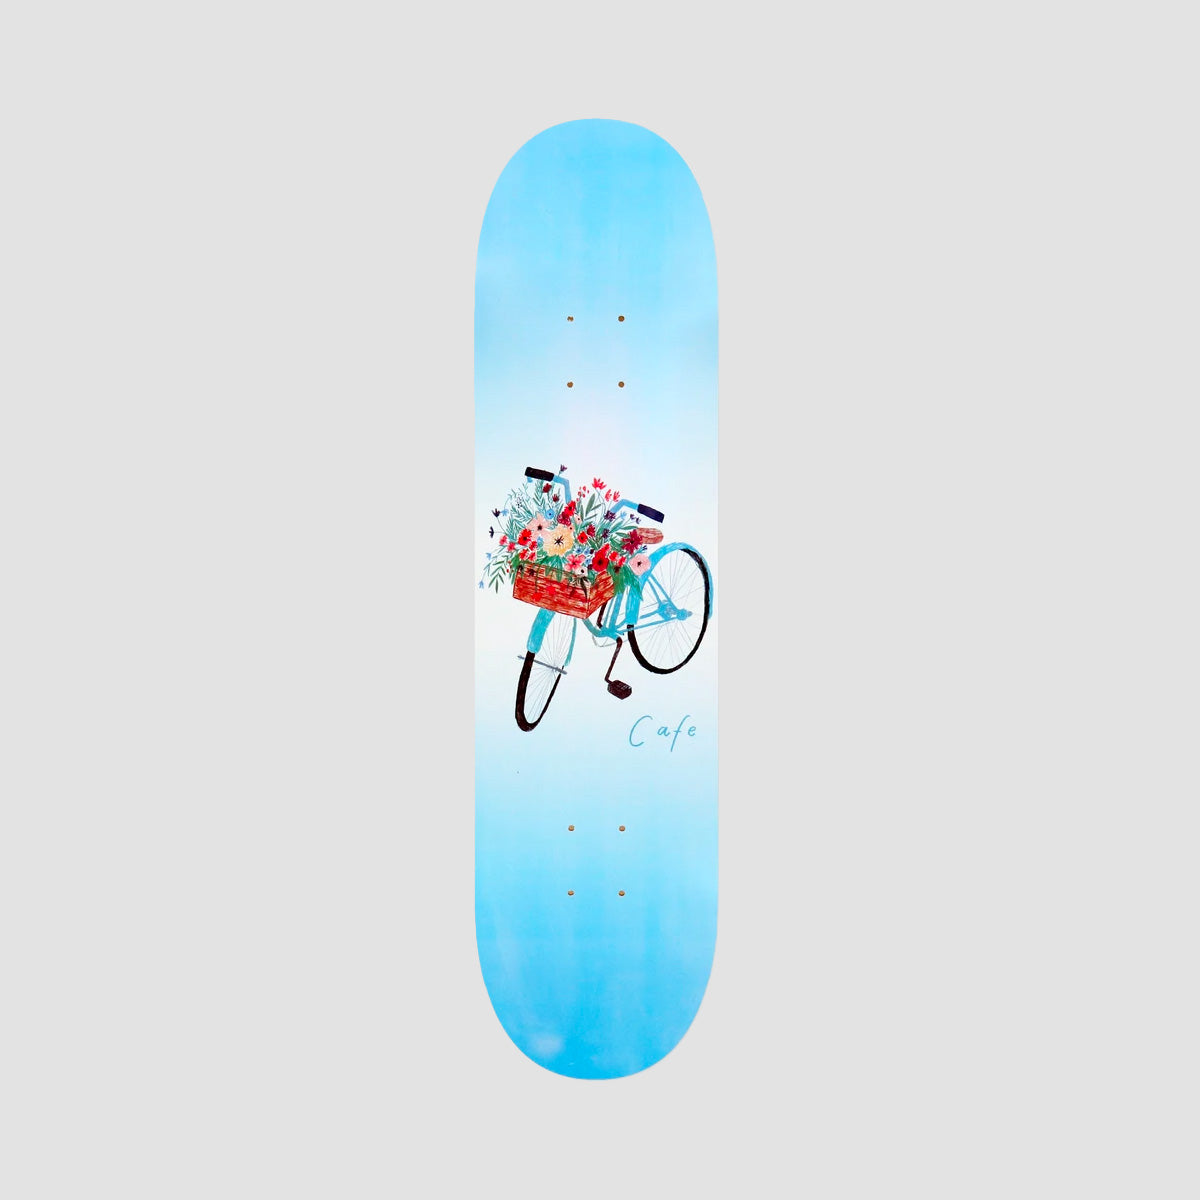 Skateboard Cafe Flower Basket Skateboard Deck Blue - 8.125"